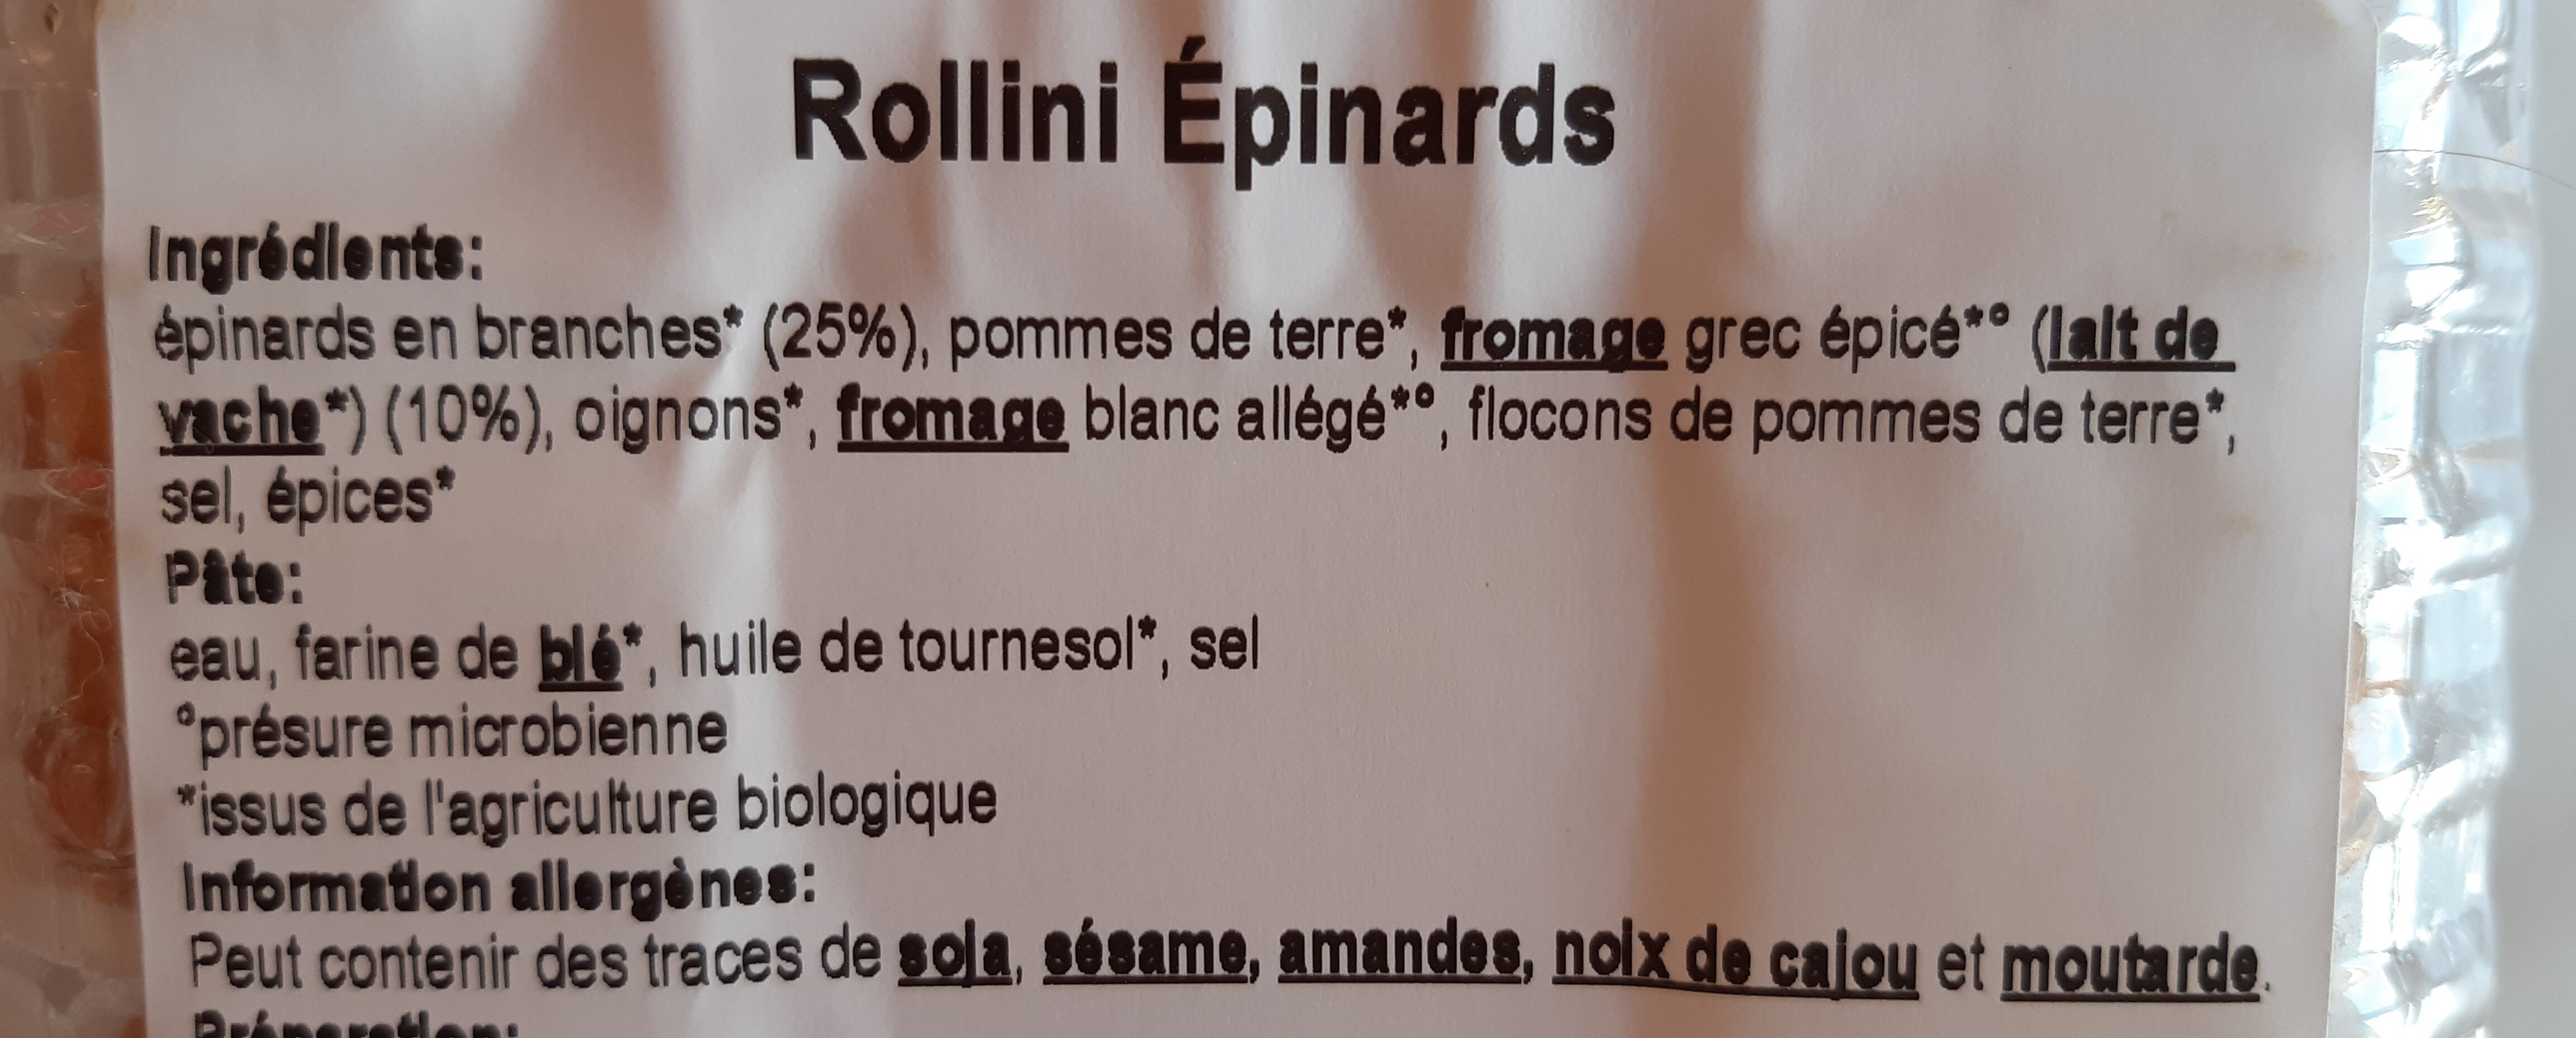 Rollini epinard - Ingrédients